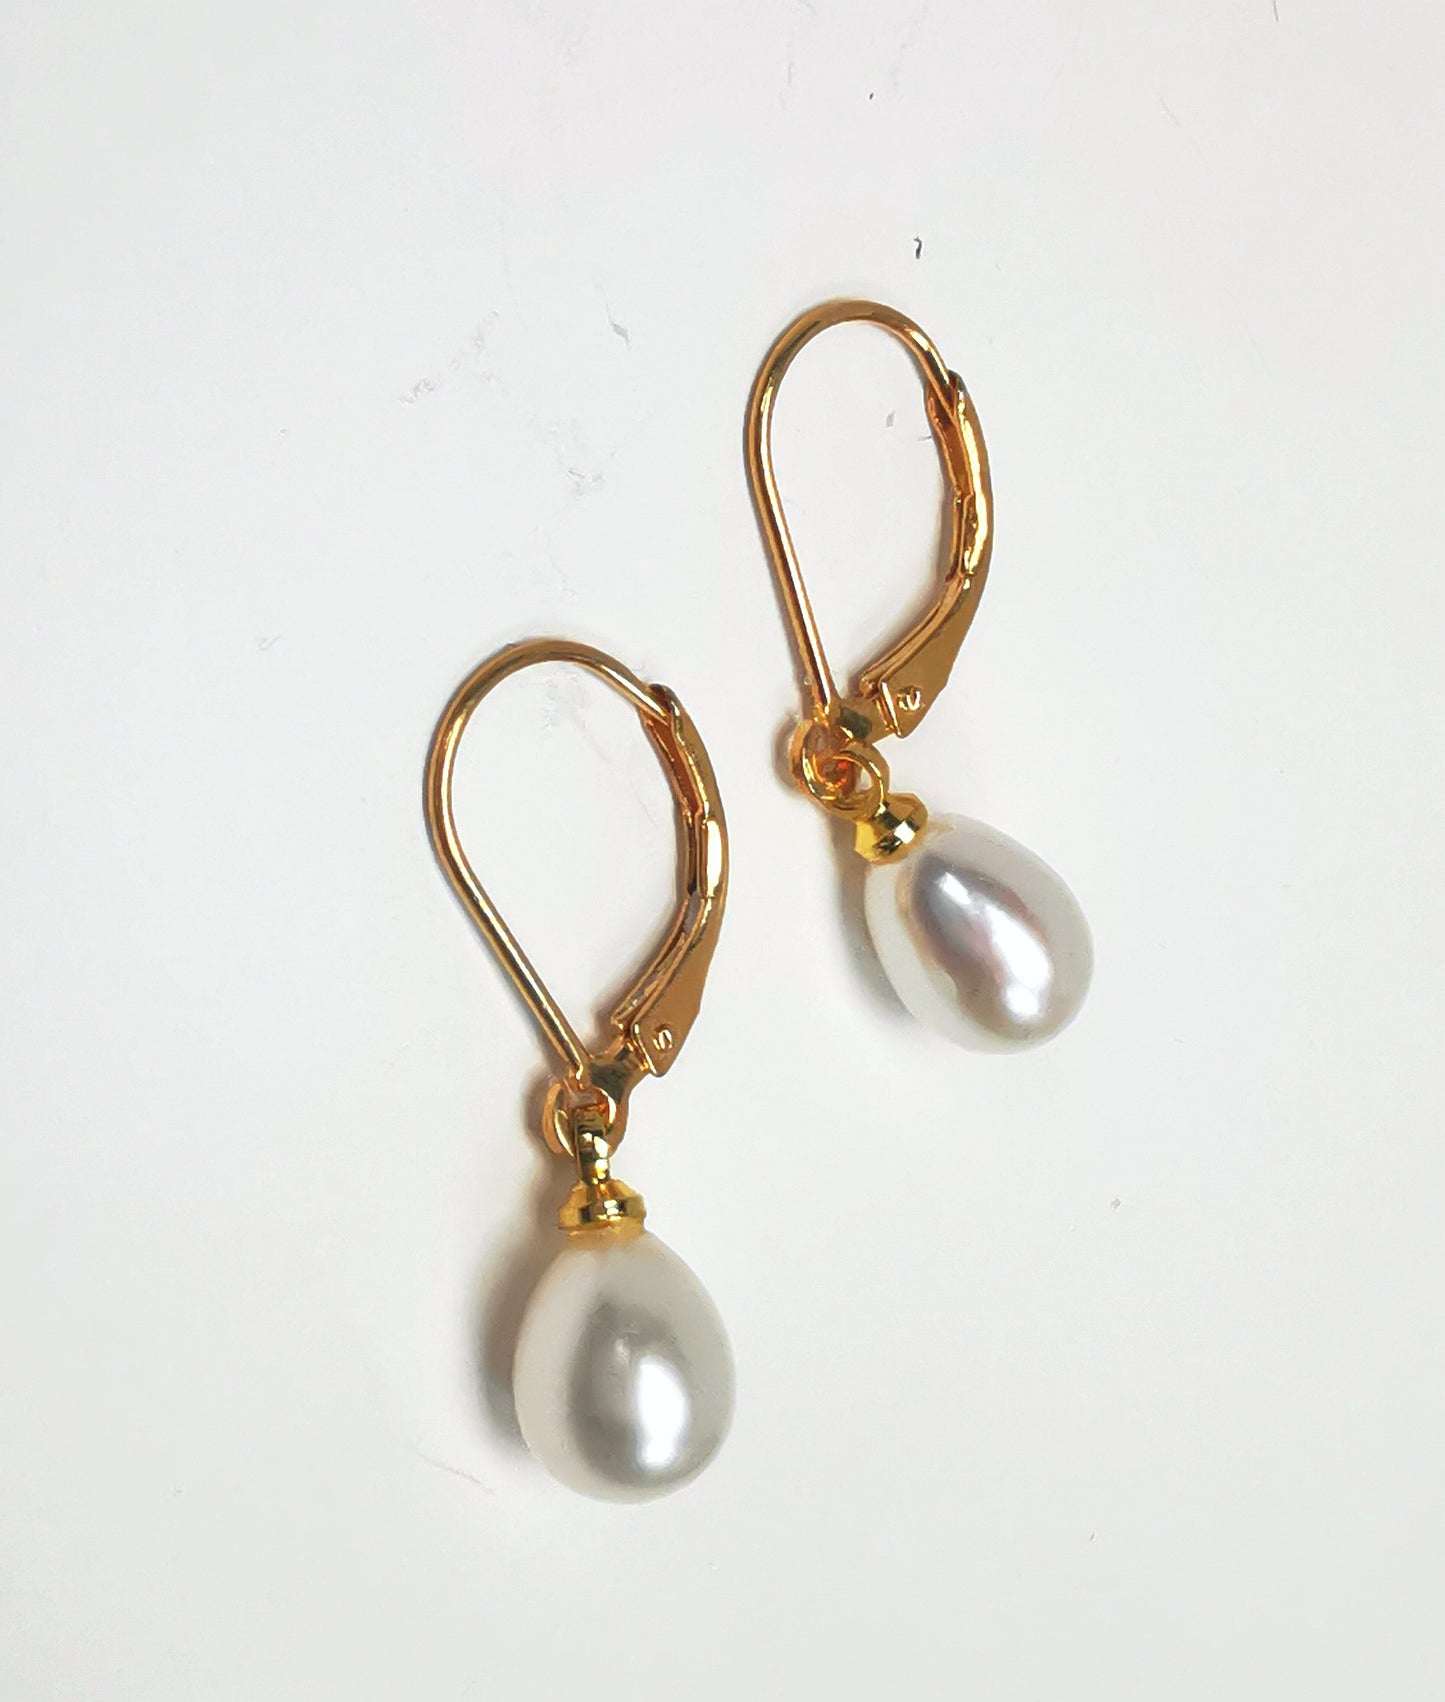 Boucles d'oreilles perles de culture blanches 7-9mm sur dormeuses plaquées or. Présentées posées sur un fond blanc, cote à cote, perles en bas celle de gauche décalée vers le bas. Vue de dessus.